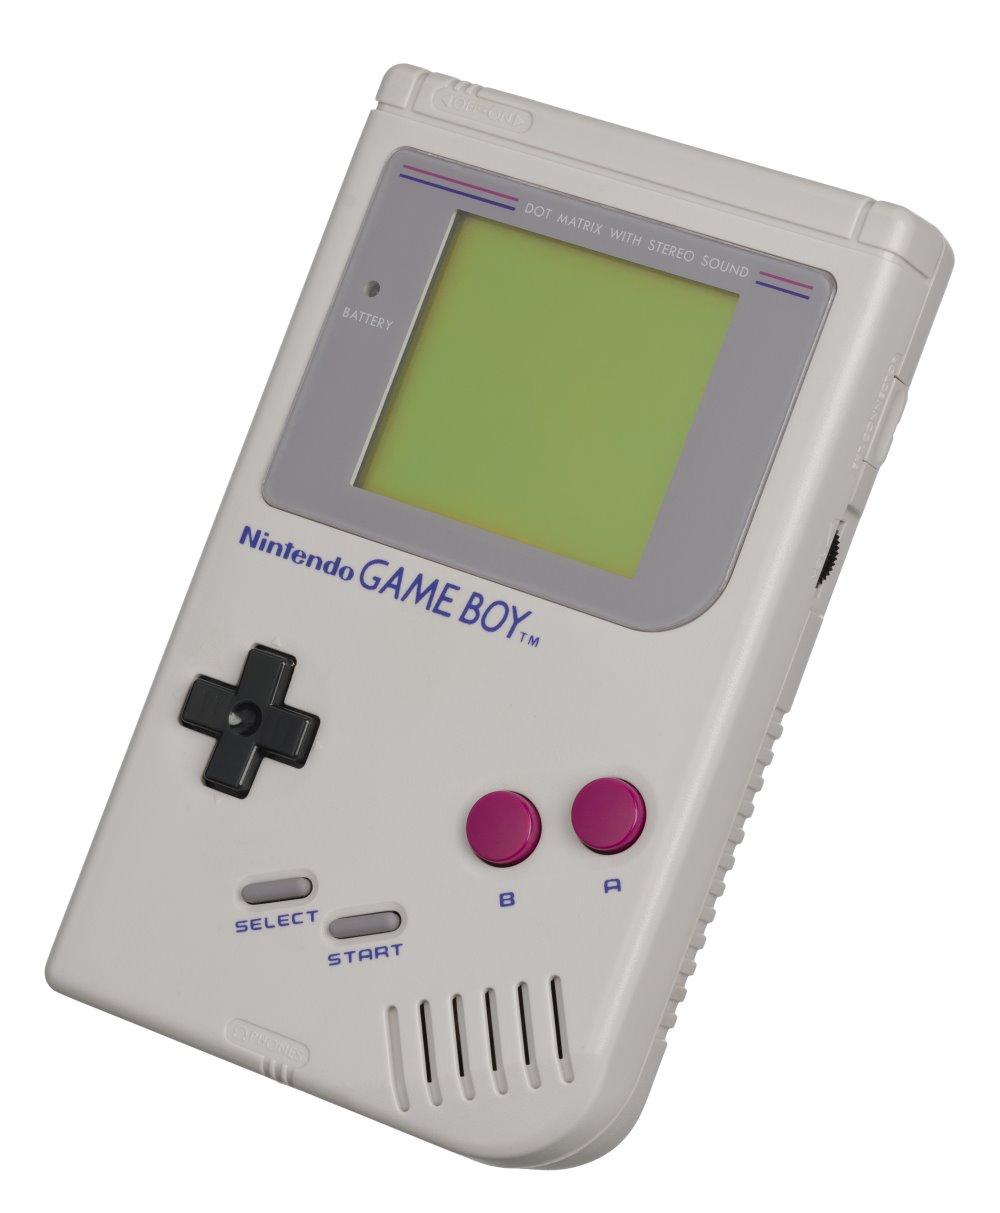 Hasta Game Boy Color tiene juegos baratos, ¿sabes cuáles son?